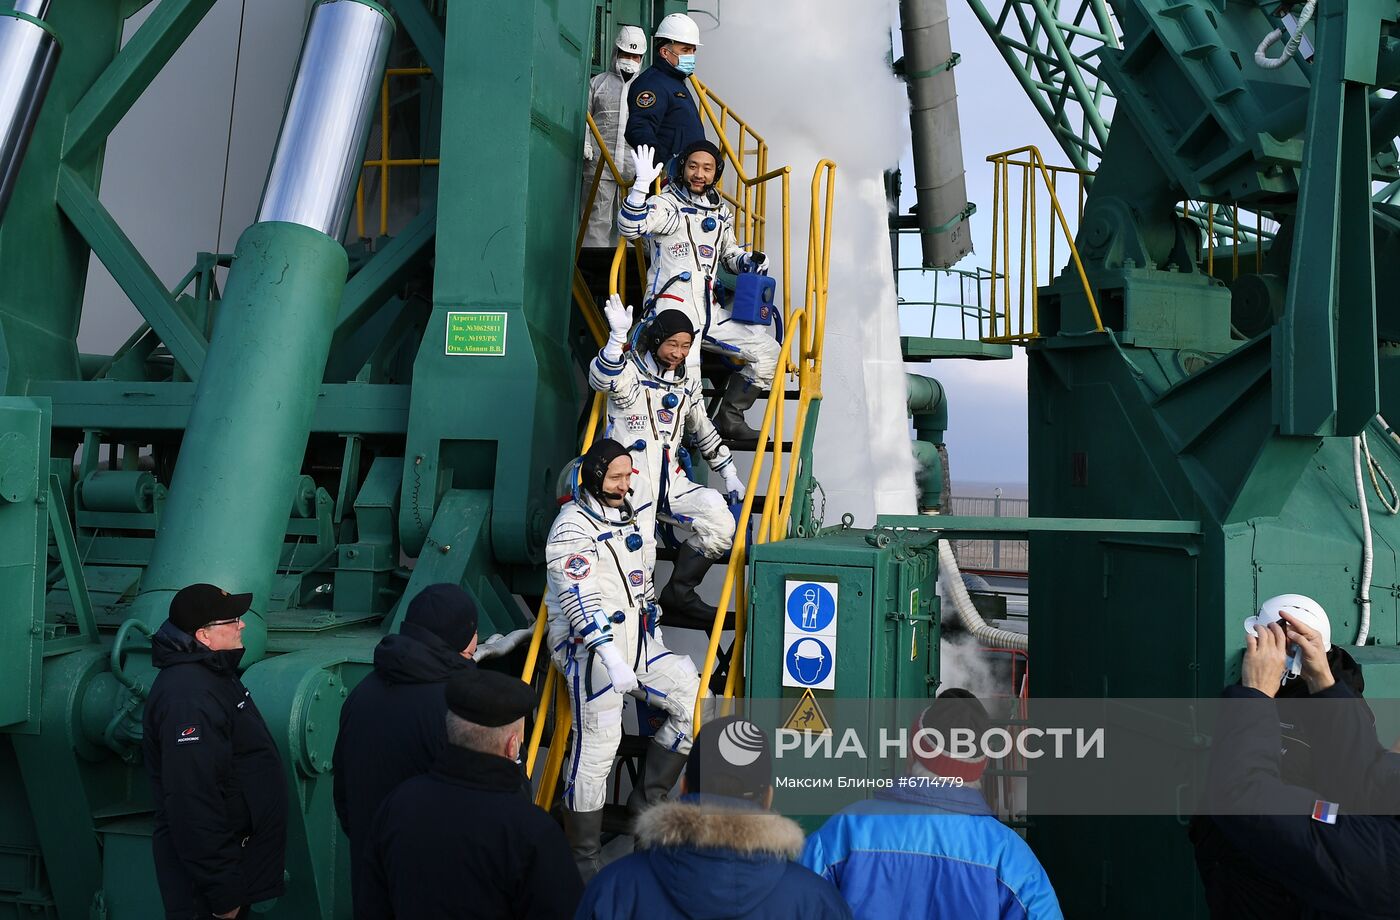 Запуск пилотируемого корабля "Союз МС-20" с японскими туристами с космодрома Байконур